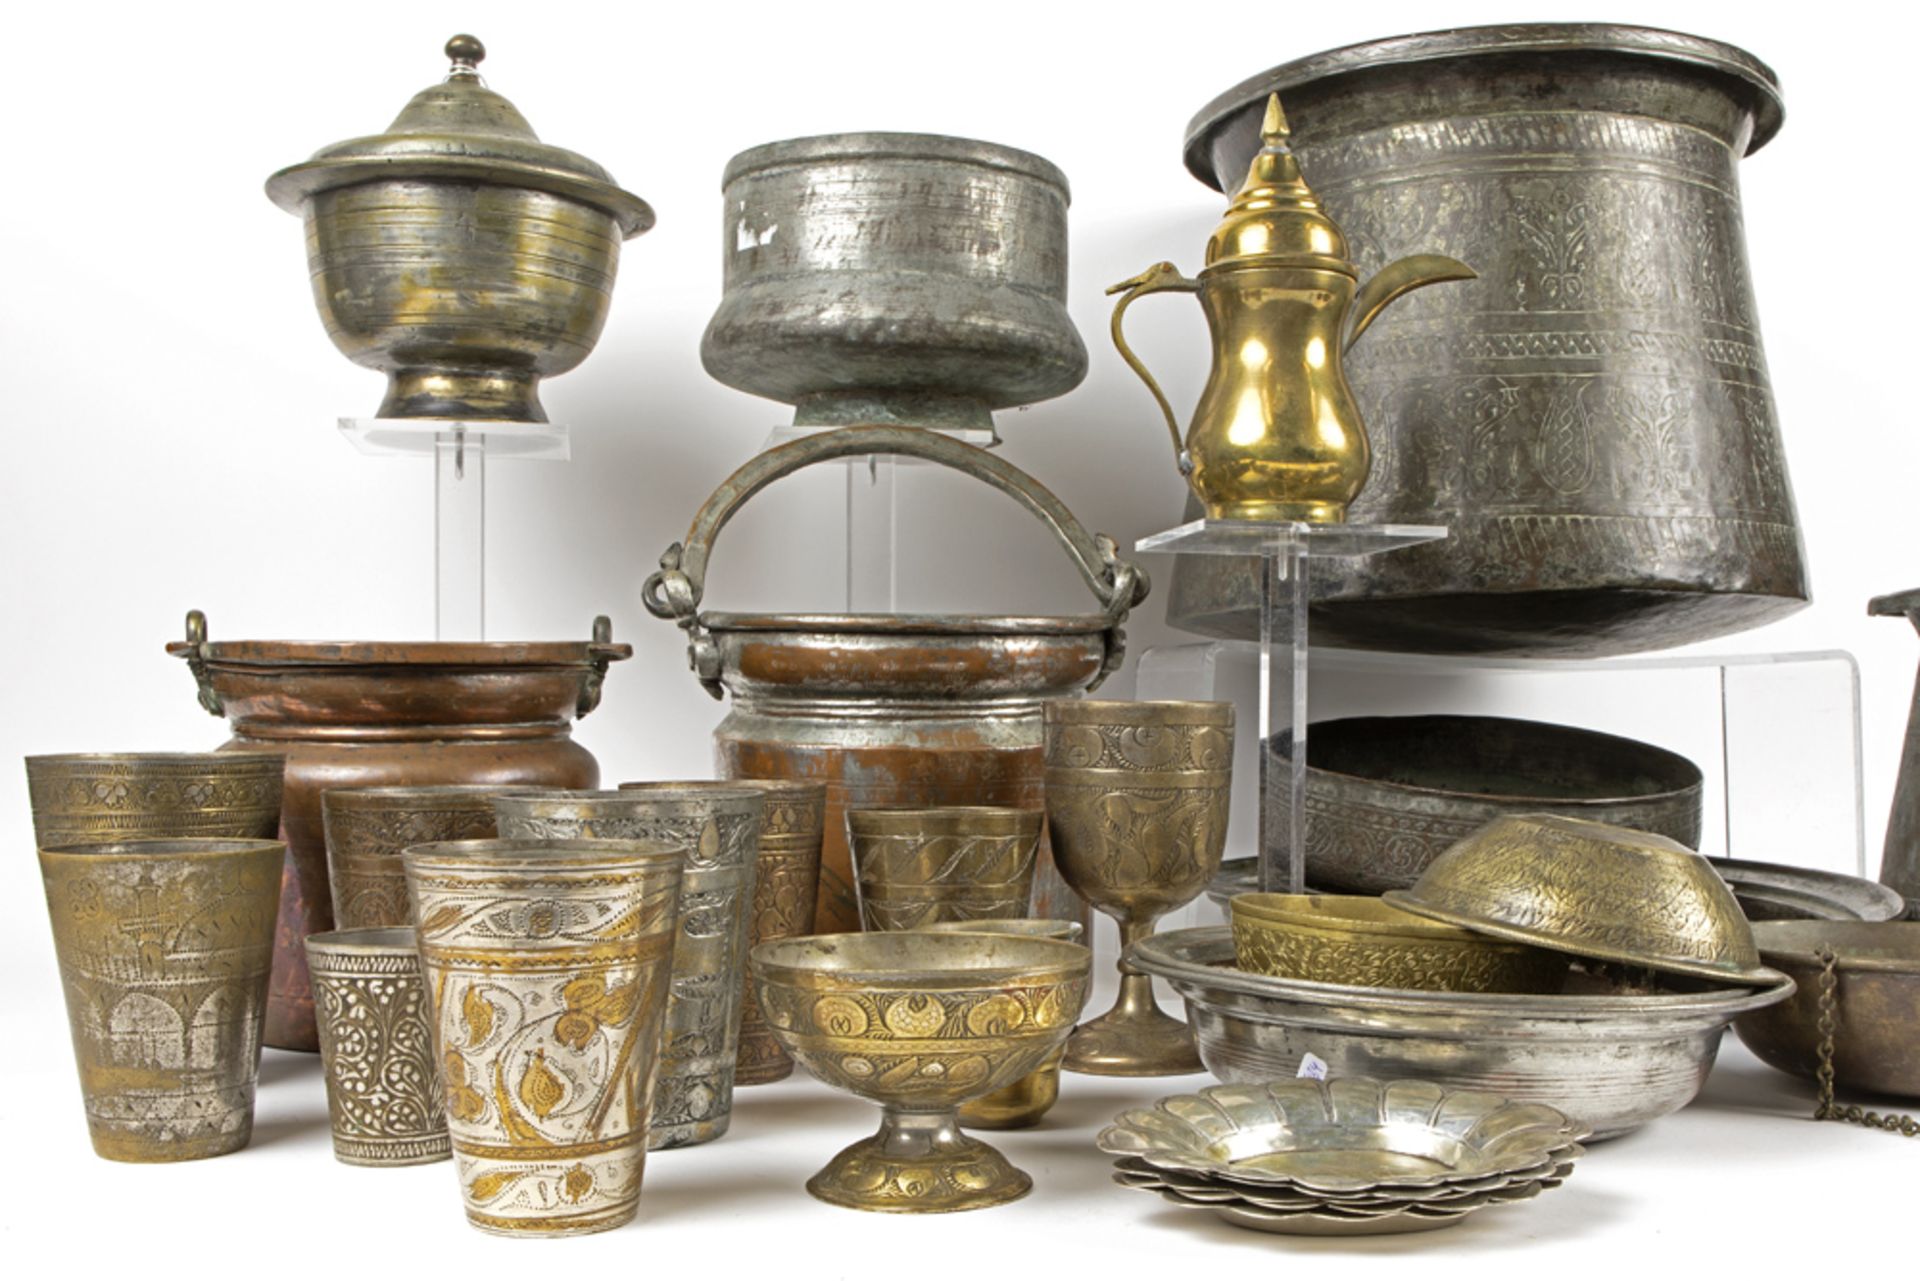 nice lot with several Middle-Eastern items in bronze || Mooi lot bronzen recipiënten uit het - Image 4 of 4